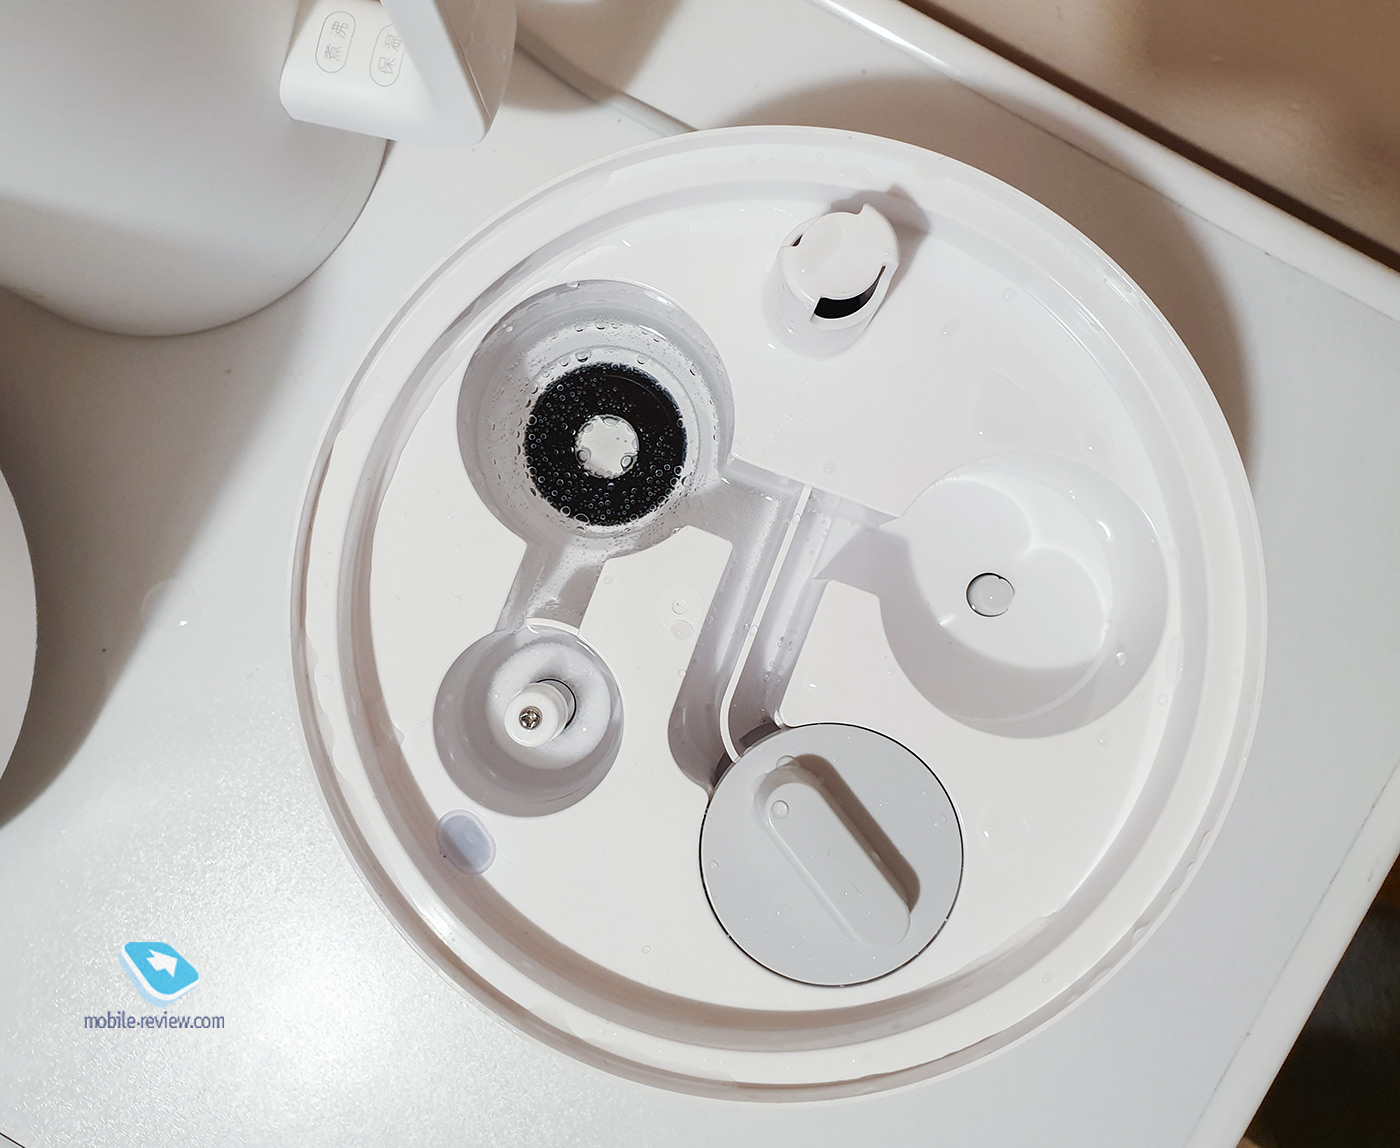 Обзор увлажнителя Mi Smart Antibacterial Humidifier от Xiaomi (для самых влажных мечтаний)